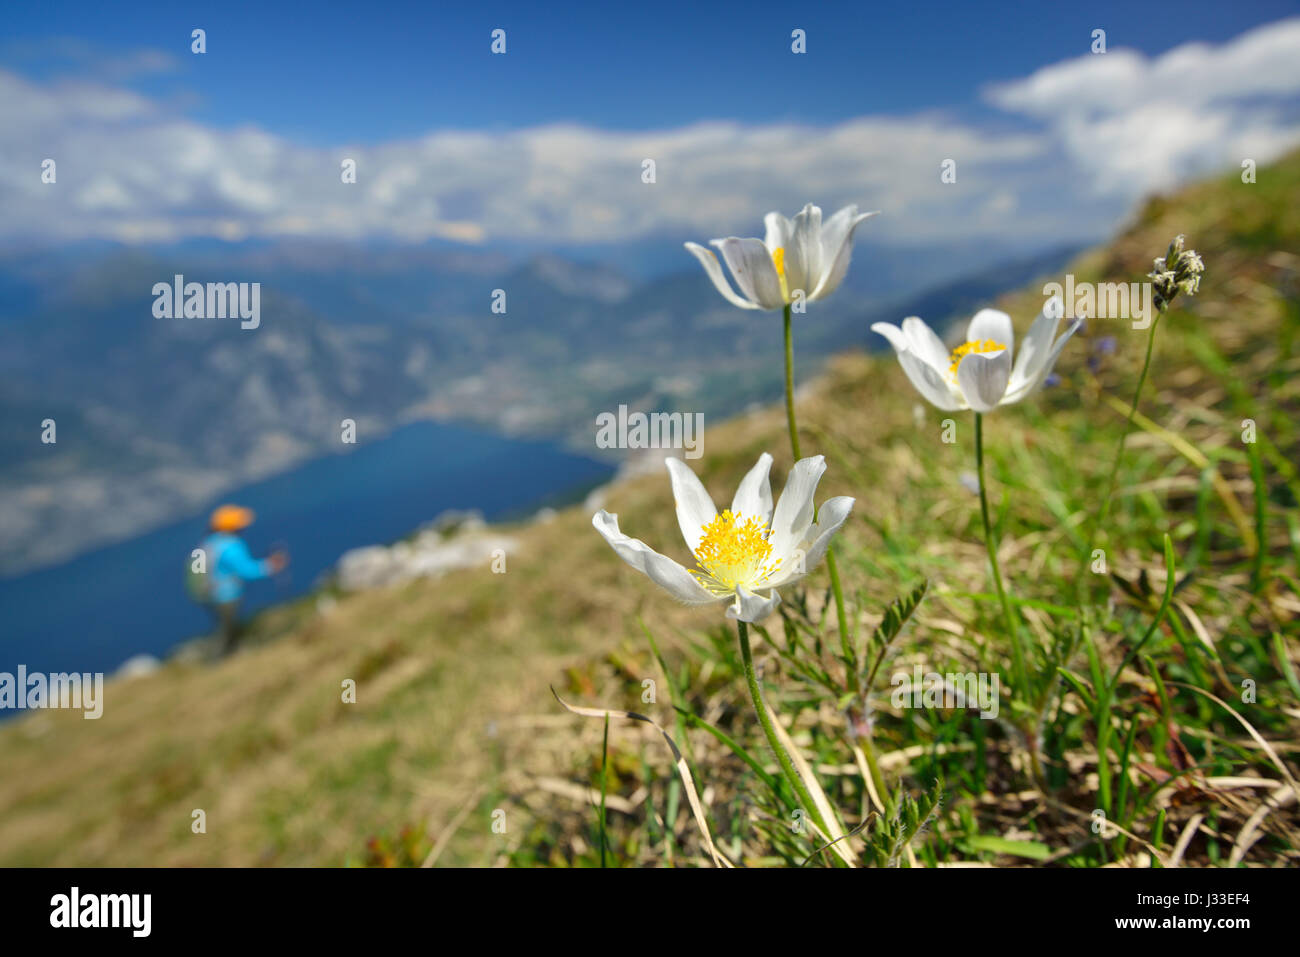 Flower meadow with anemones, Monte Altissimo, Monte Baldo, Garda Mountains, Trentino, Italy Stock Photo